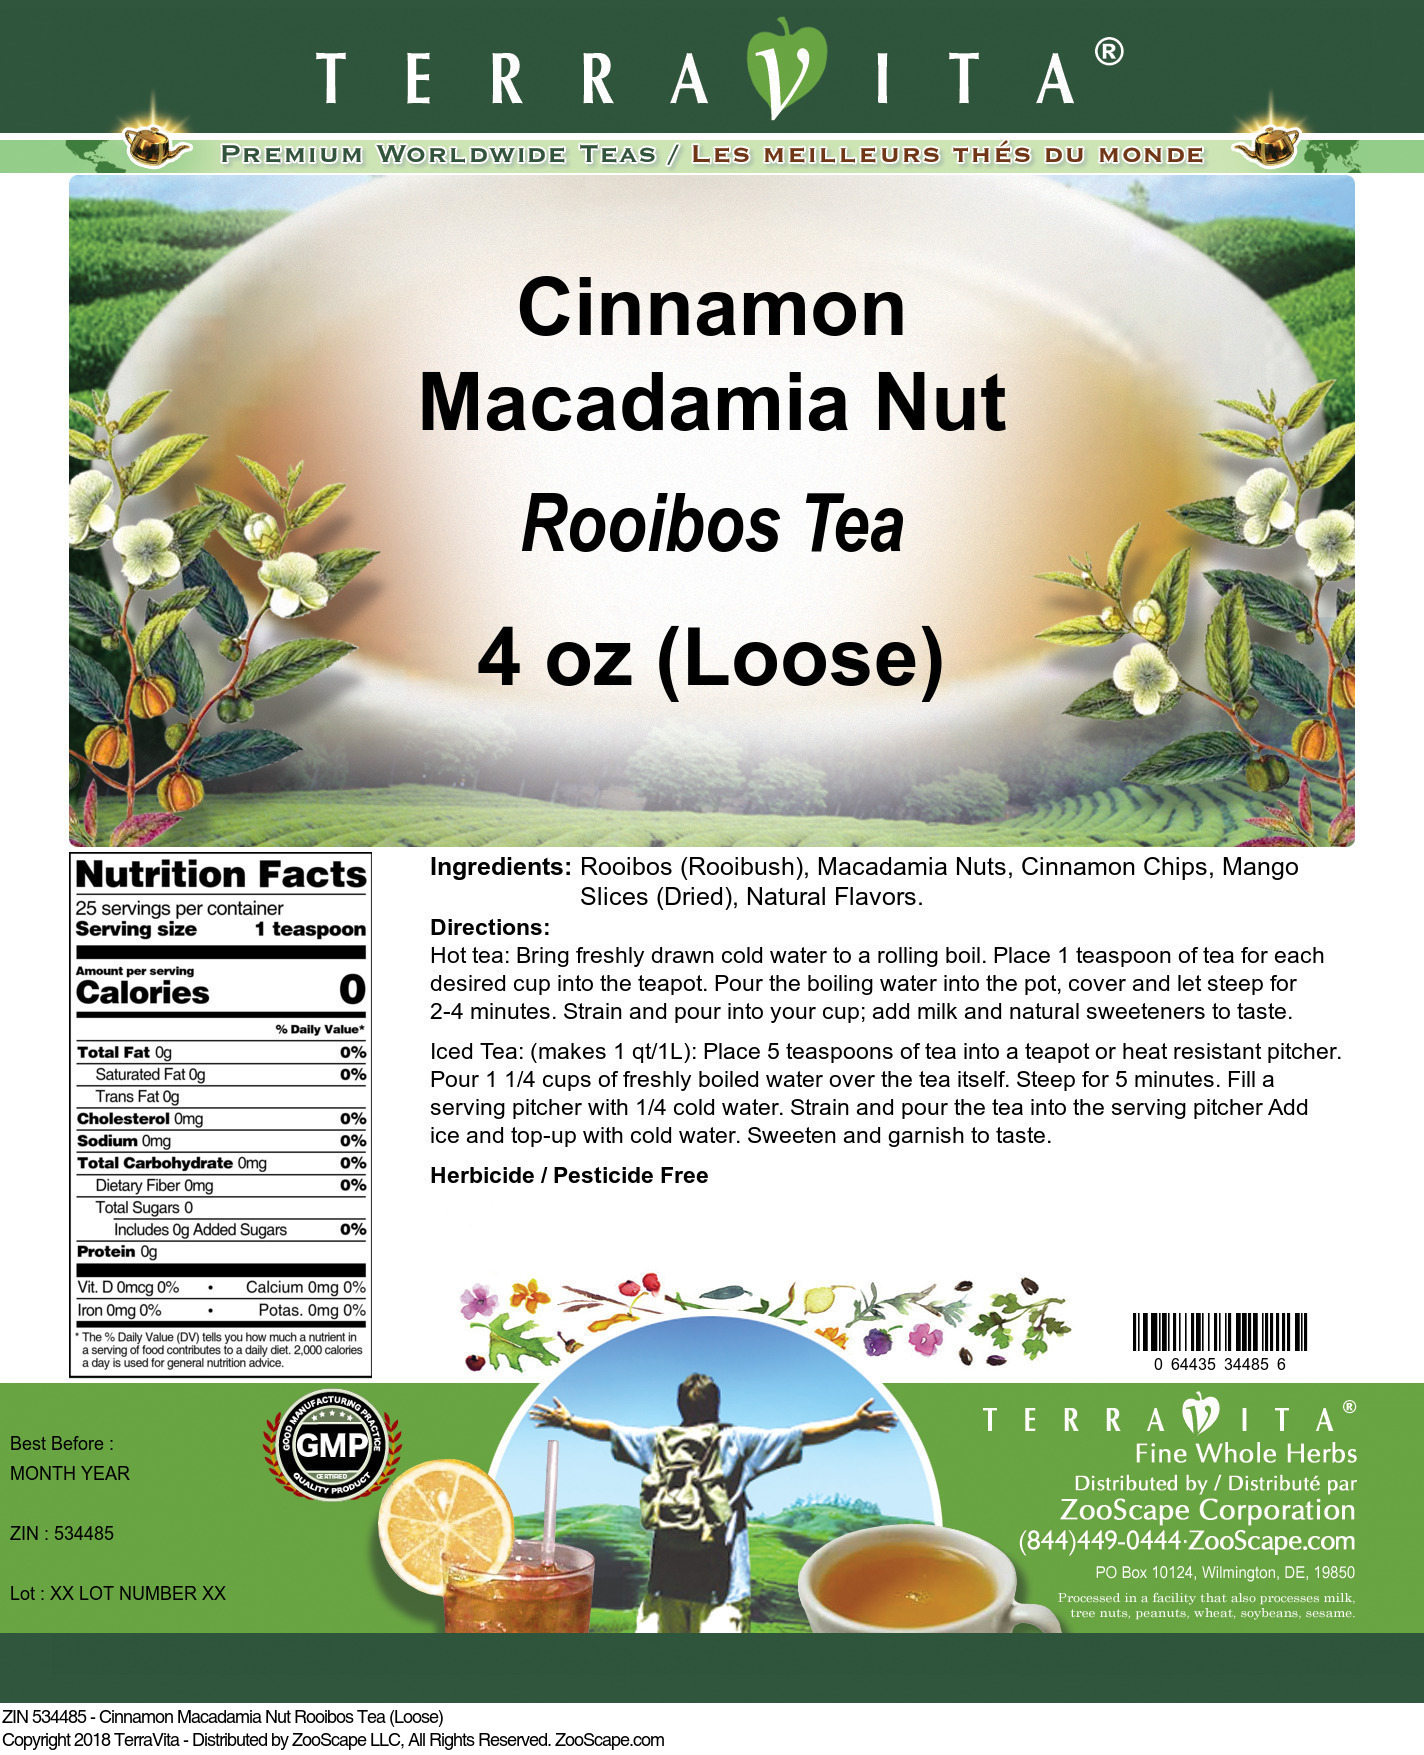 Cinnamon Macadamia Nut Rooibos Tea (Loose) - Label